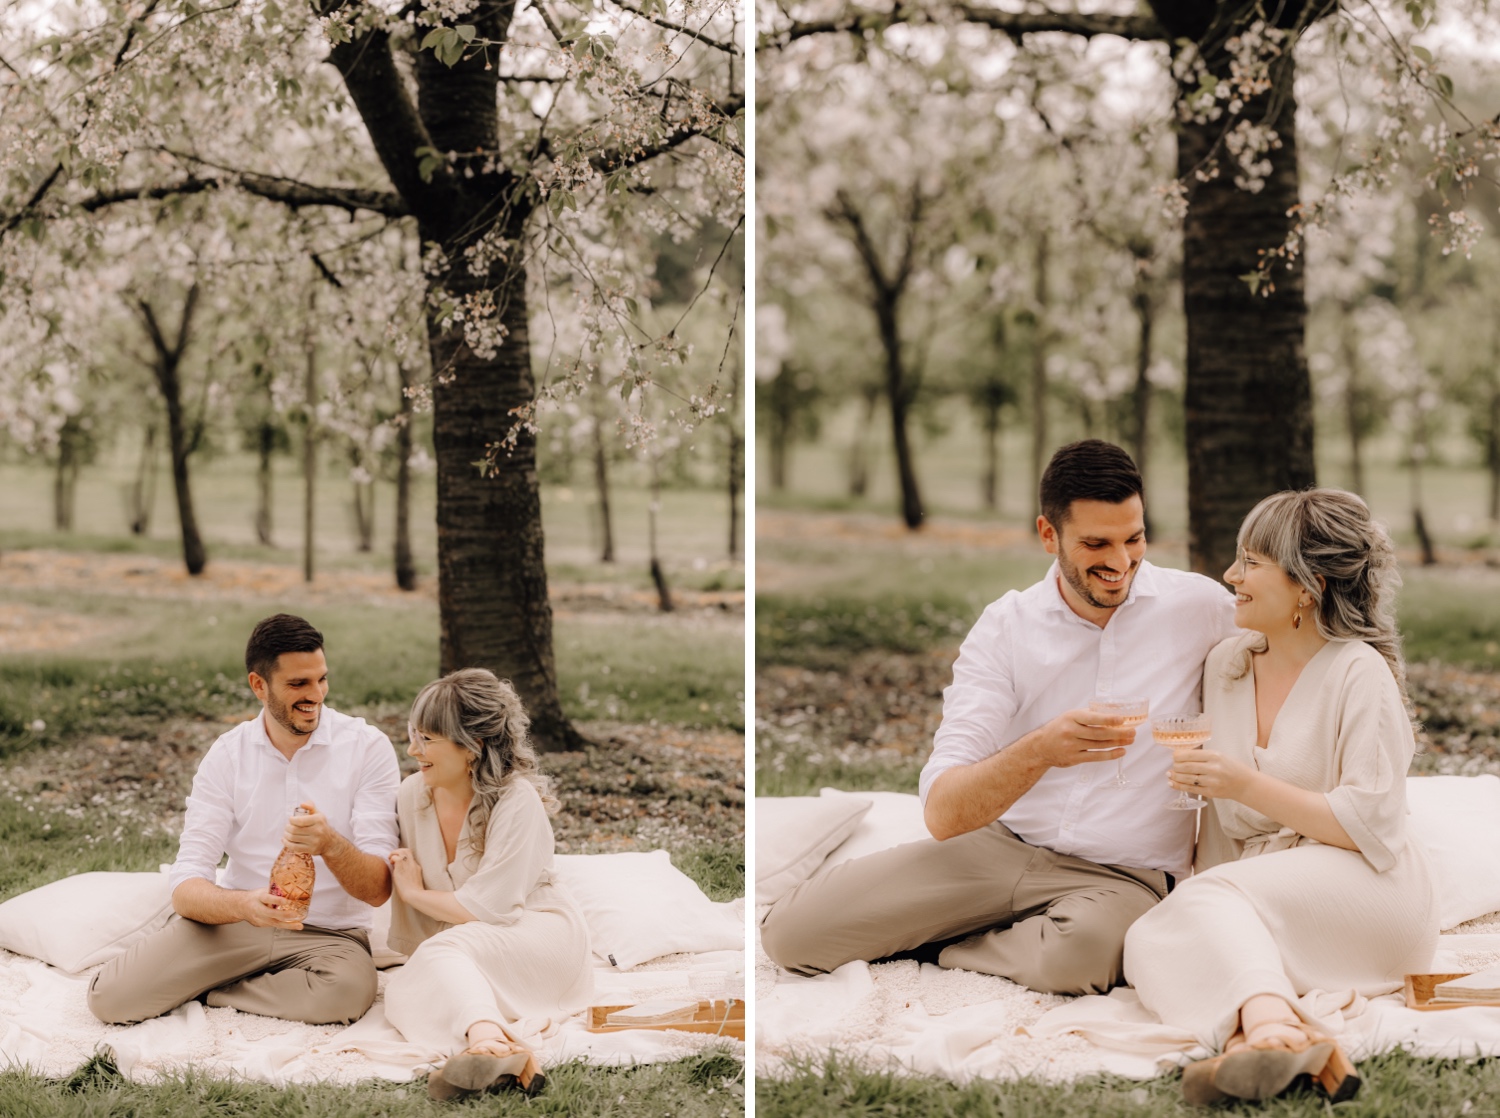 Huwelijksfotograaf Limburg - koppeltje klinkt op hun verloving tussen de bloesems